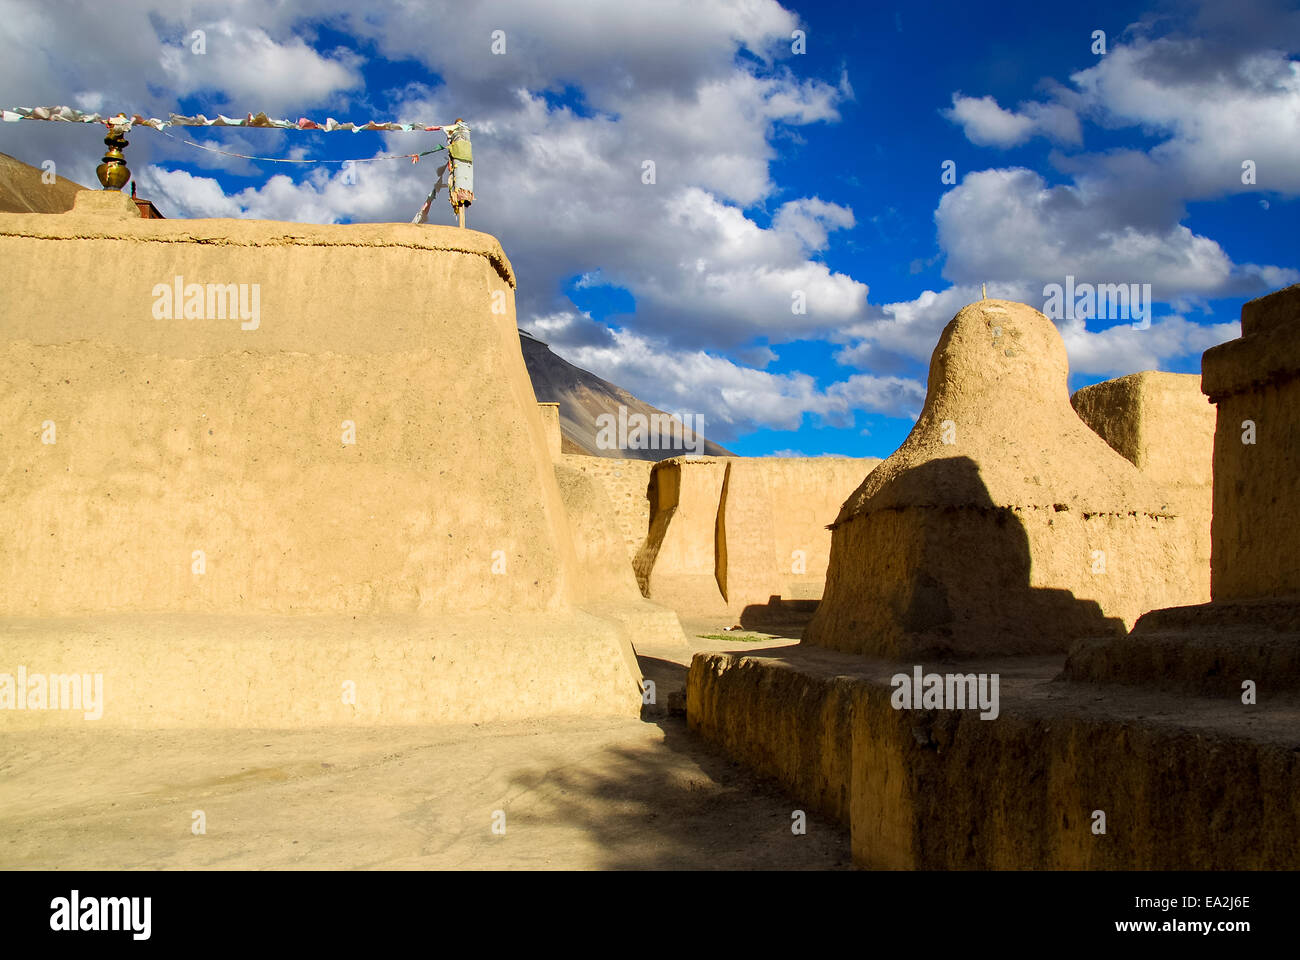 Il famoso monastero di tabo in spiti valley in India Foto Stock